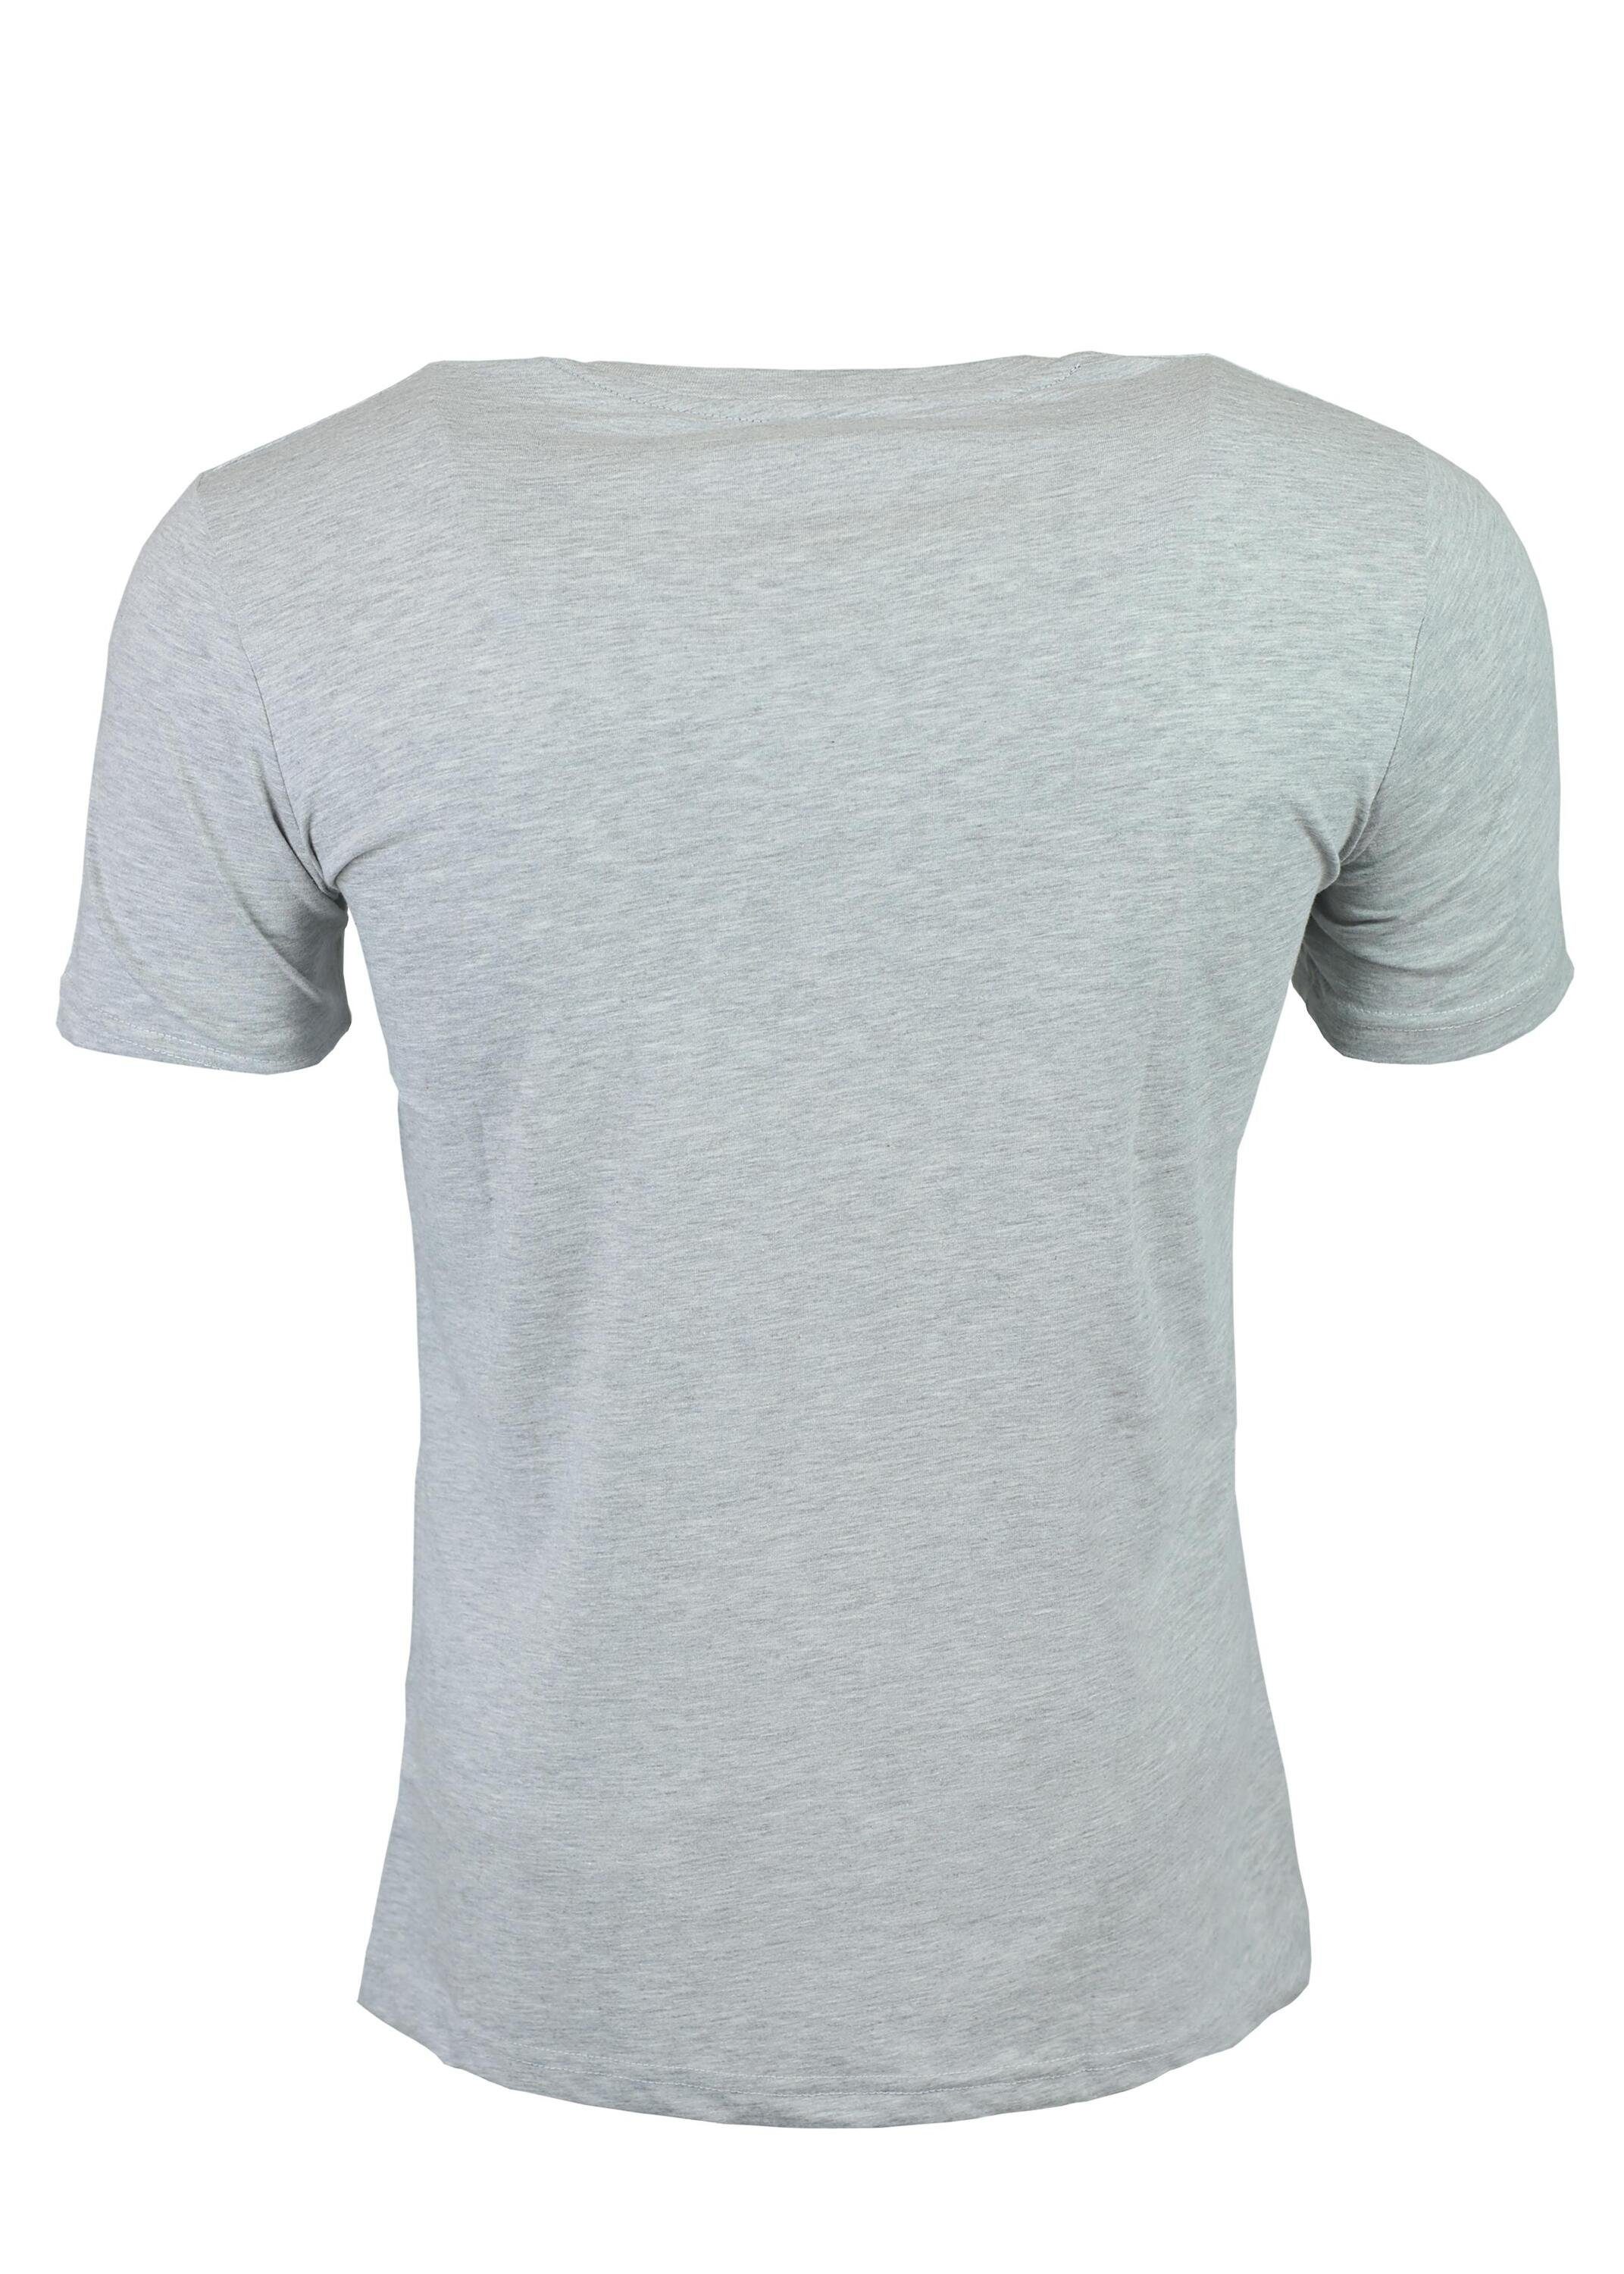 T-Shirt Lifestyle für Grey und Sport Herren, für FuPer aus Baumwolle Luis